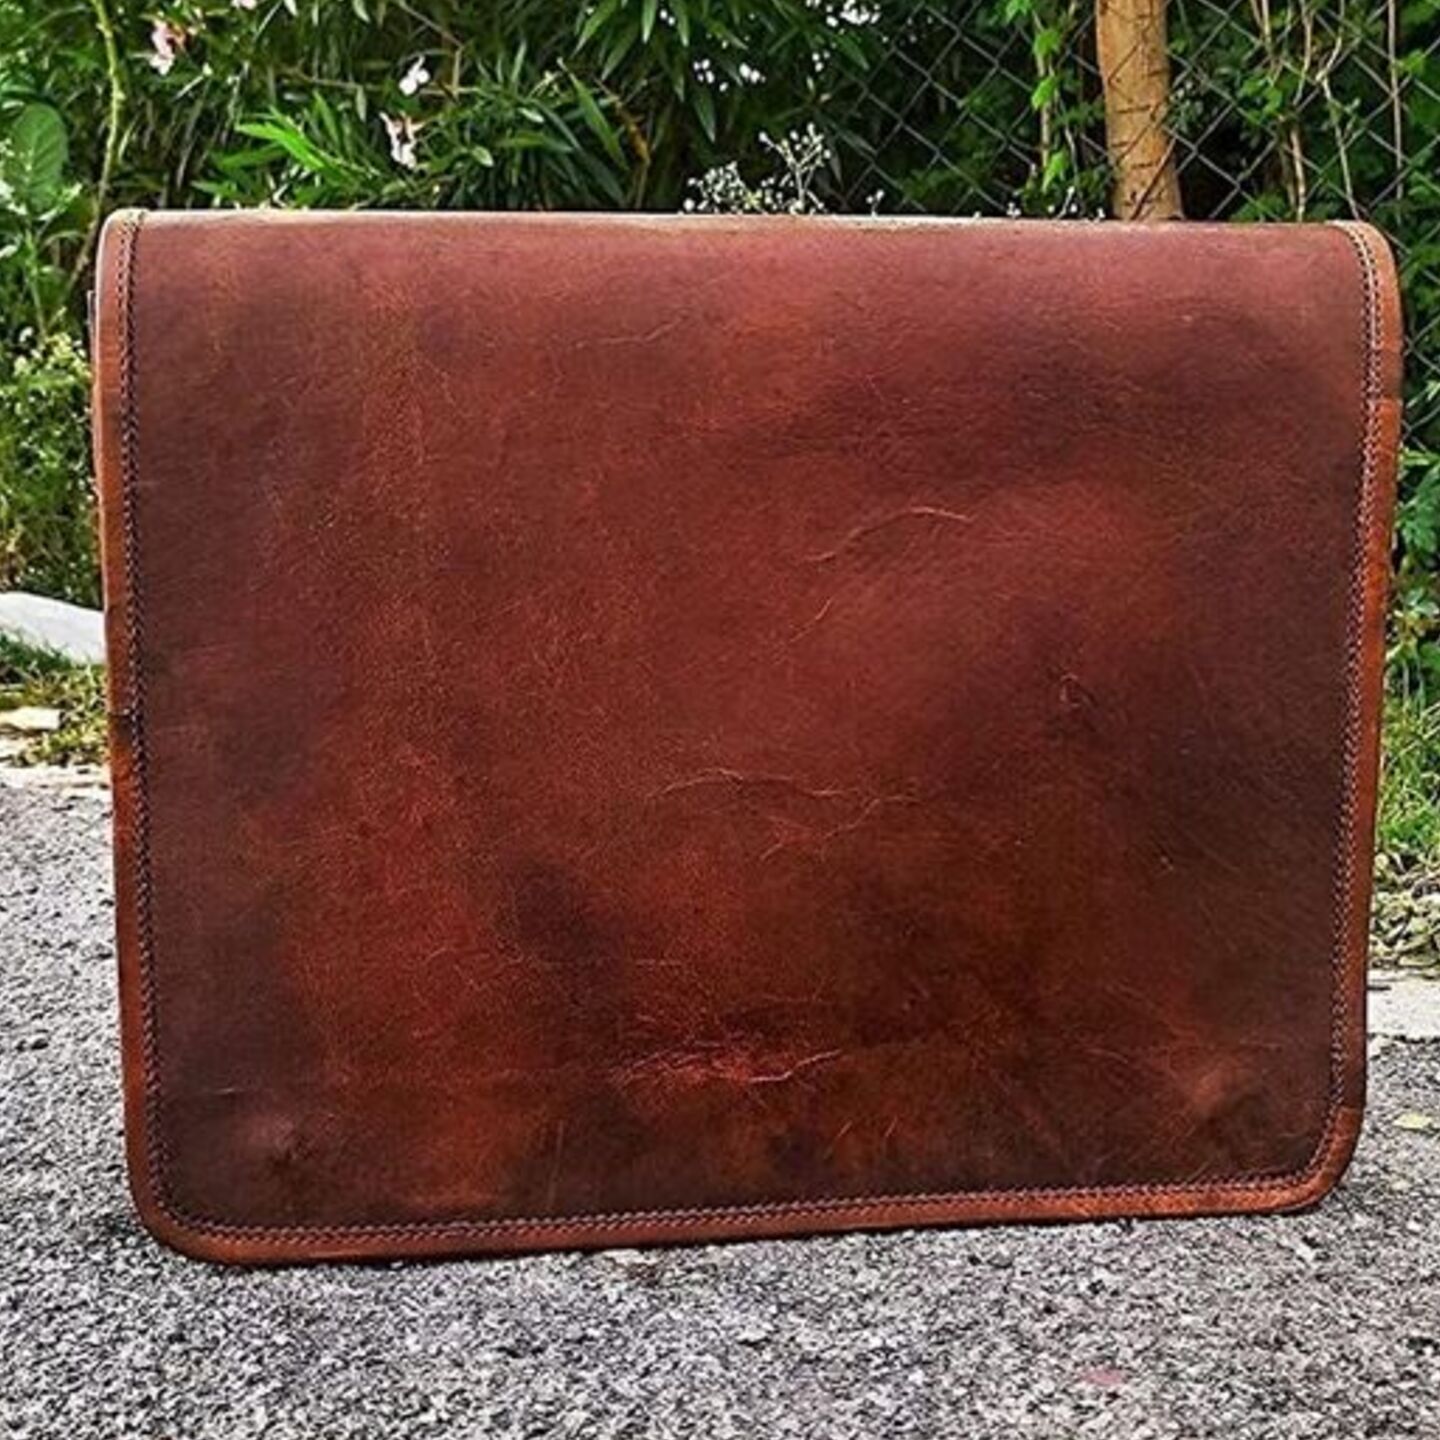 Goat Leather Vintage Genuine Messenger Shoulder Men's Satchel School Bag